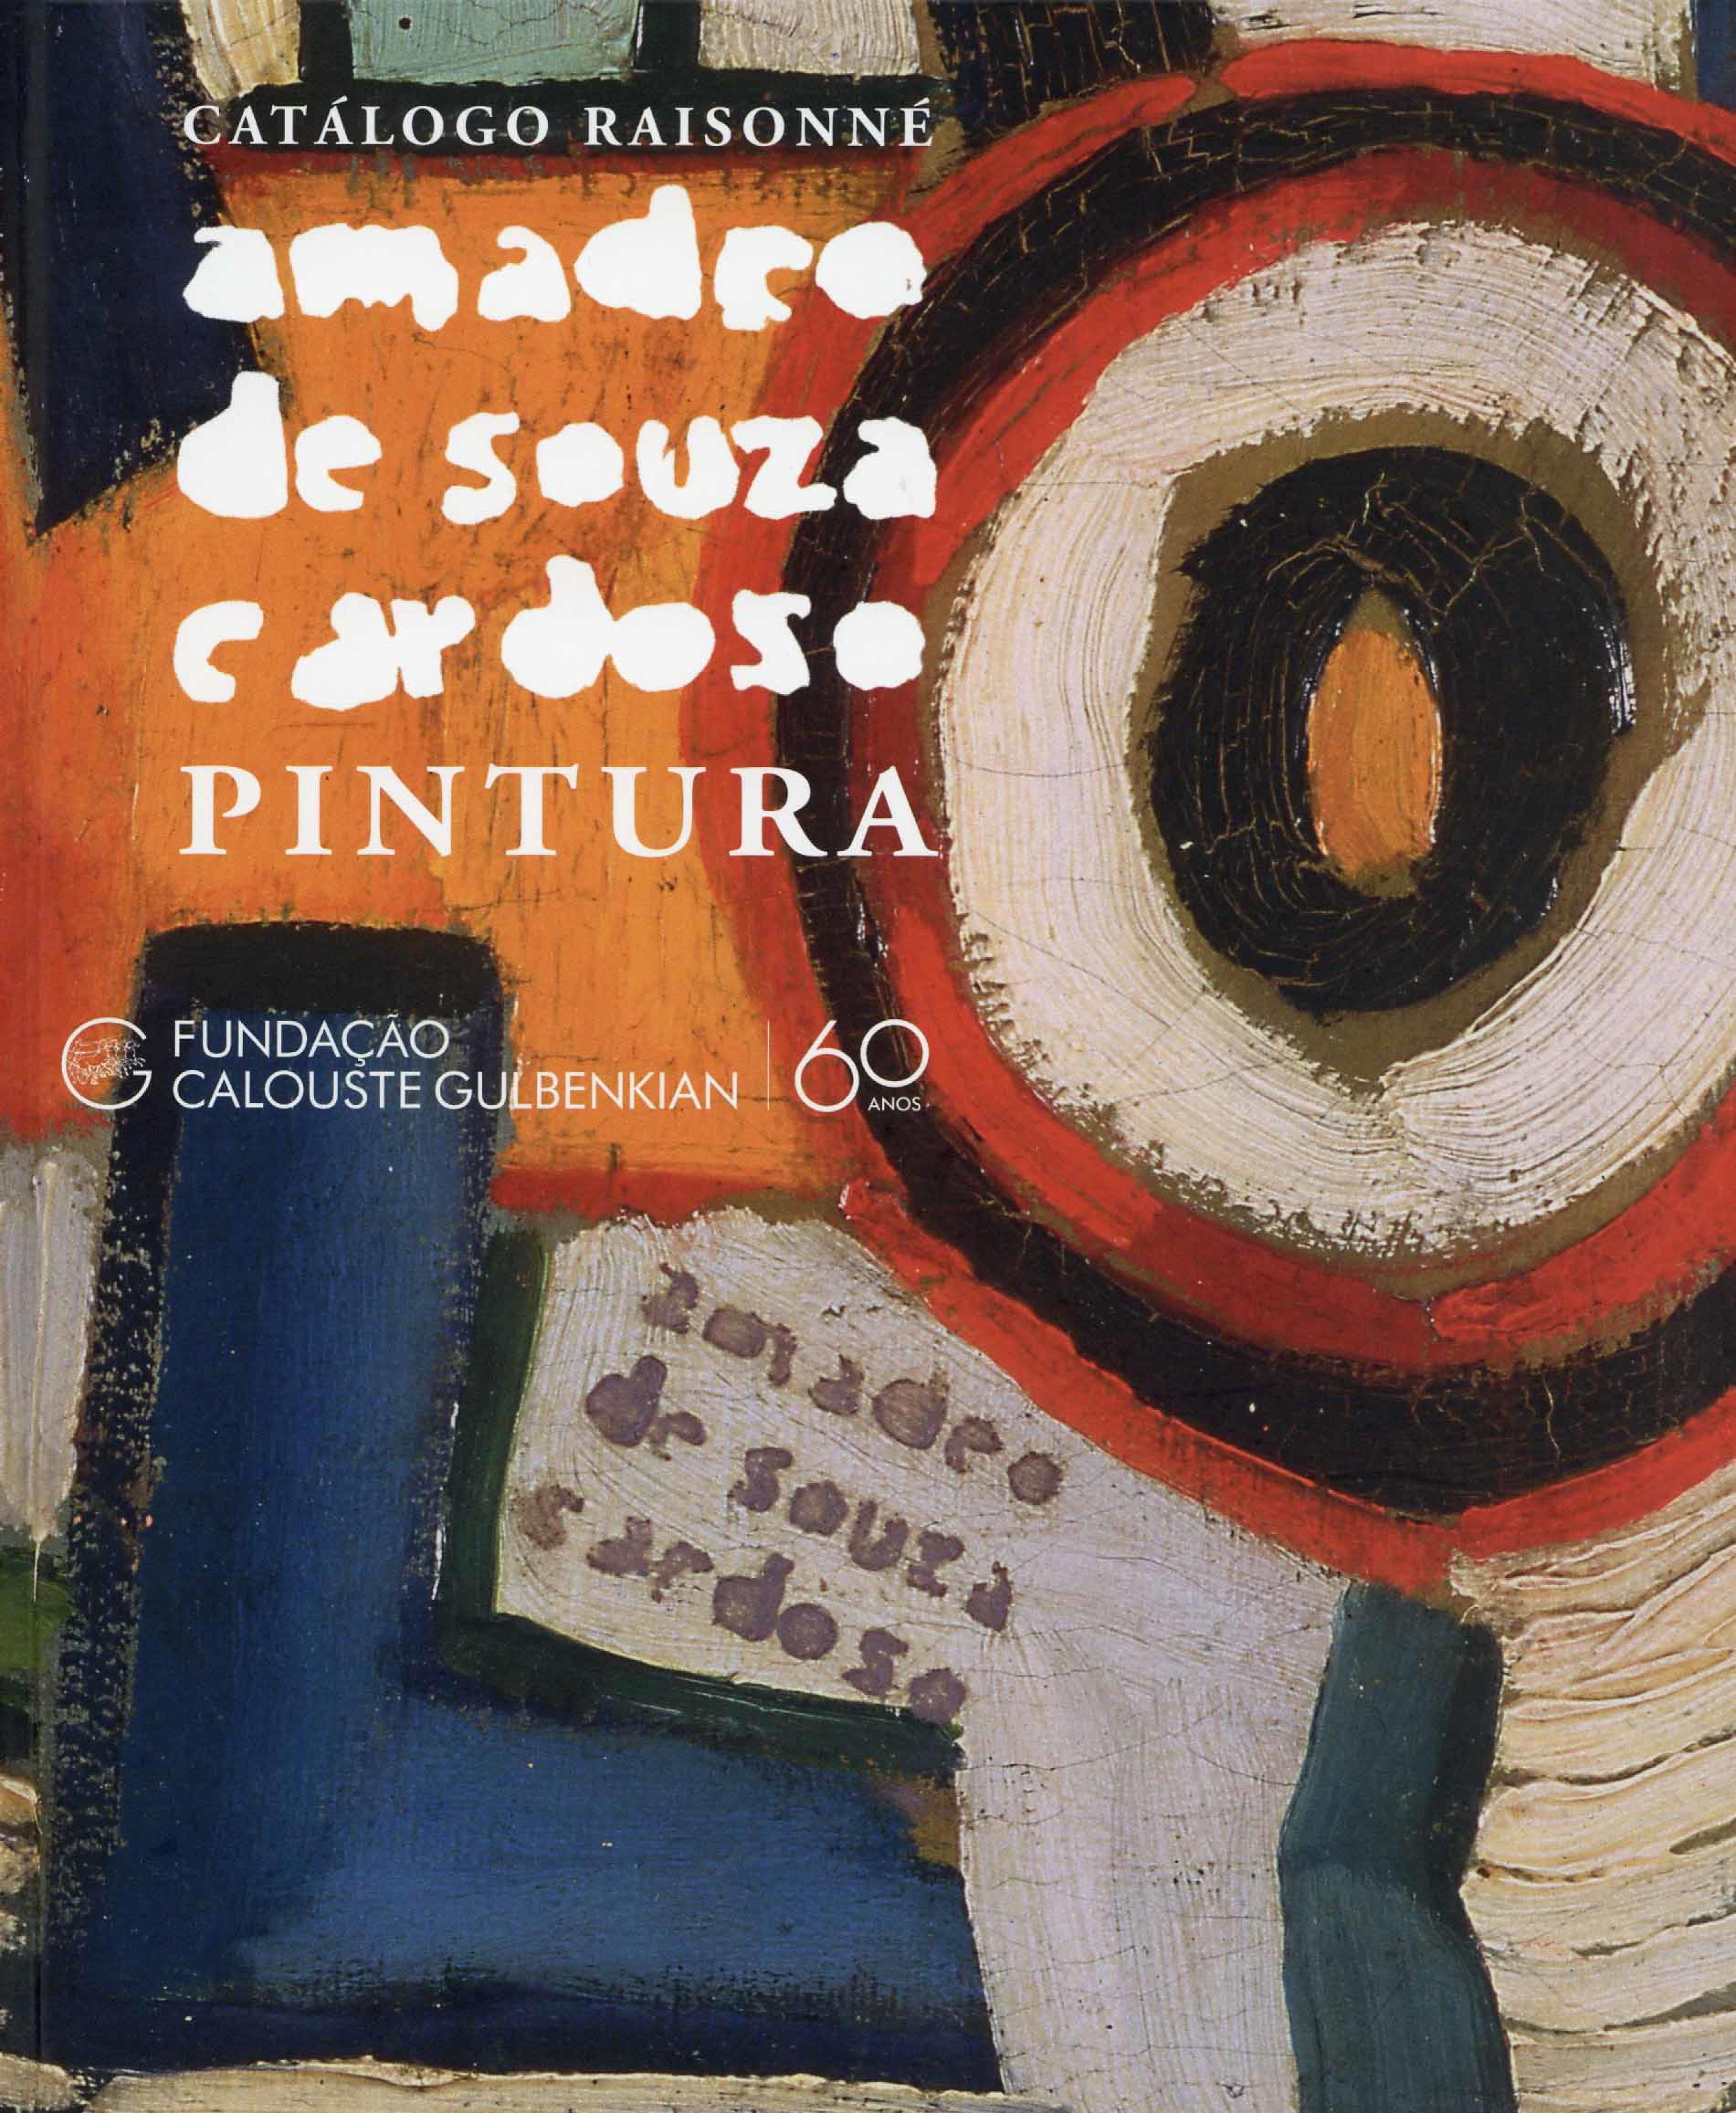 Catálogo Raisonné Amadeo de Souza-Cardoso: Pintura